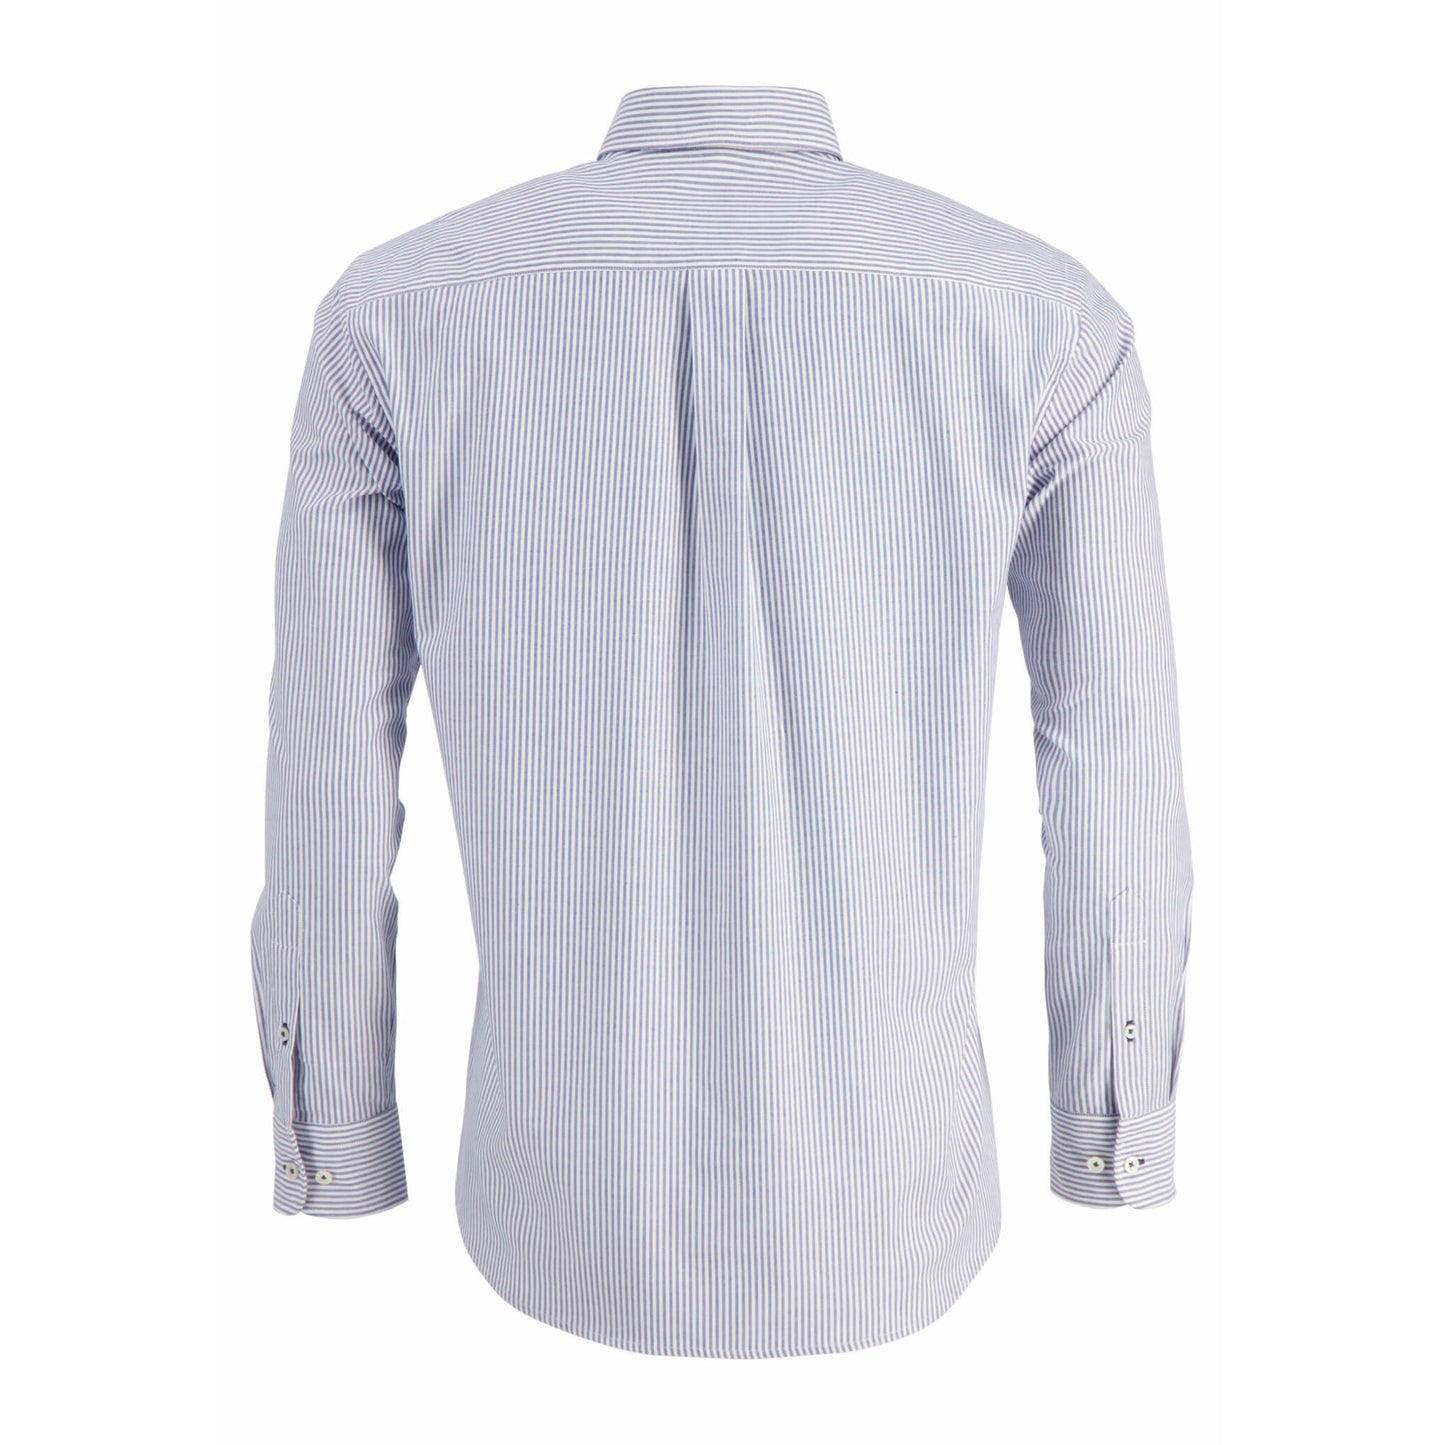 Fynch Hatton 1213 5020 5023 Midblue Oxford Striped Casual Shirt